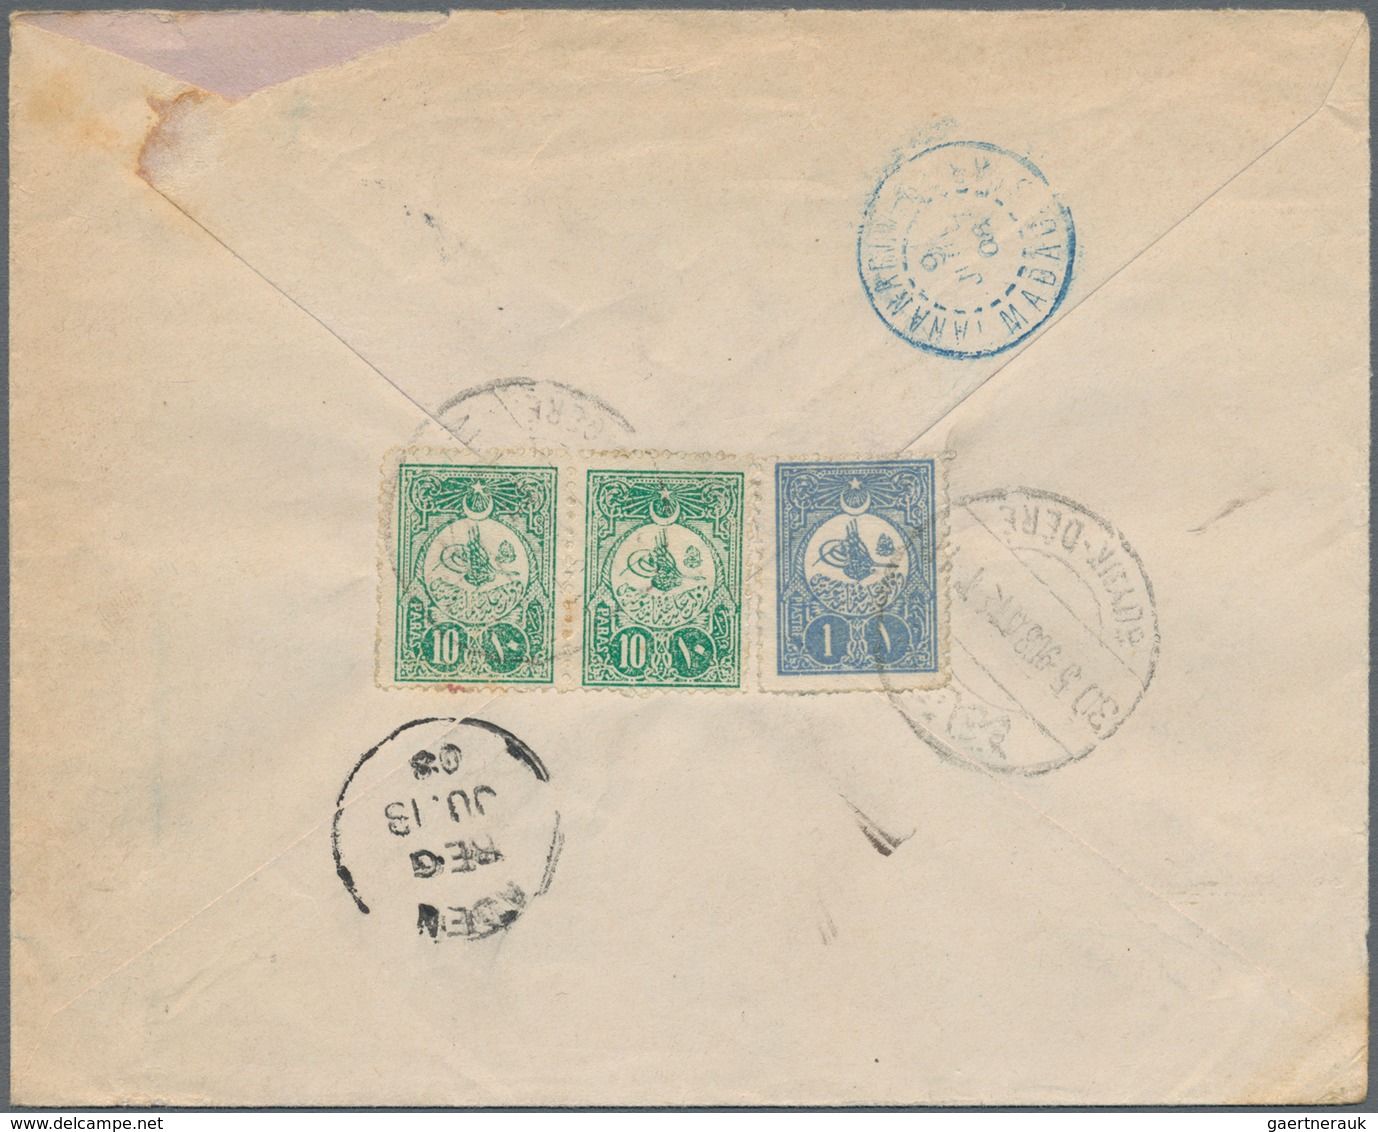 Türkei - Ganzsachen: 1908, Envelope 20 P. Uprated On Reverse 1 P., 10 P. (pair) Canc. "BÜYÜK-DERE 30 - Postal Stationery